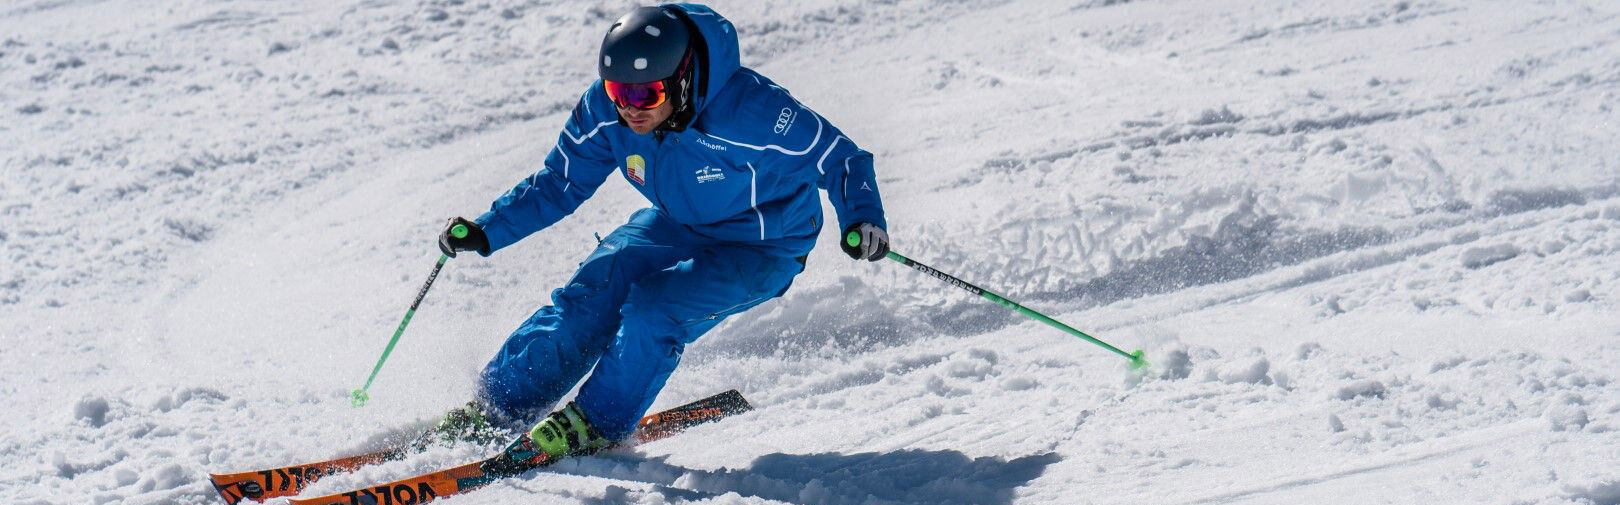 Leer skiën in Flachau - skicursussen, snowboardcursussen - skischool Flachau